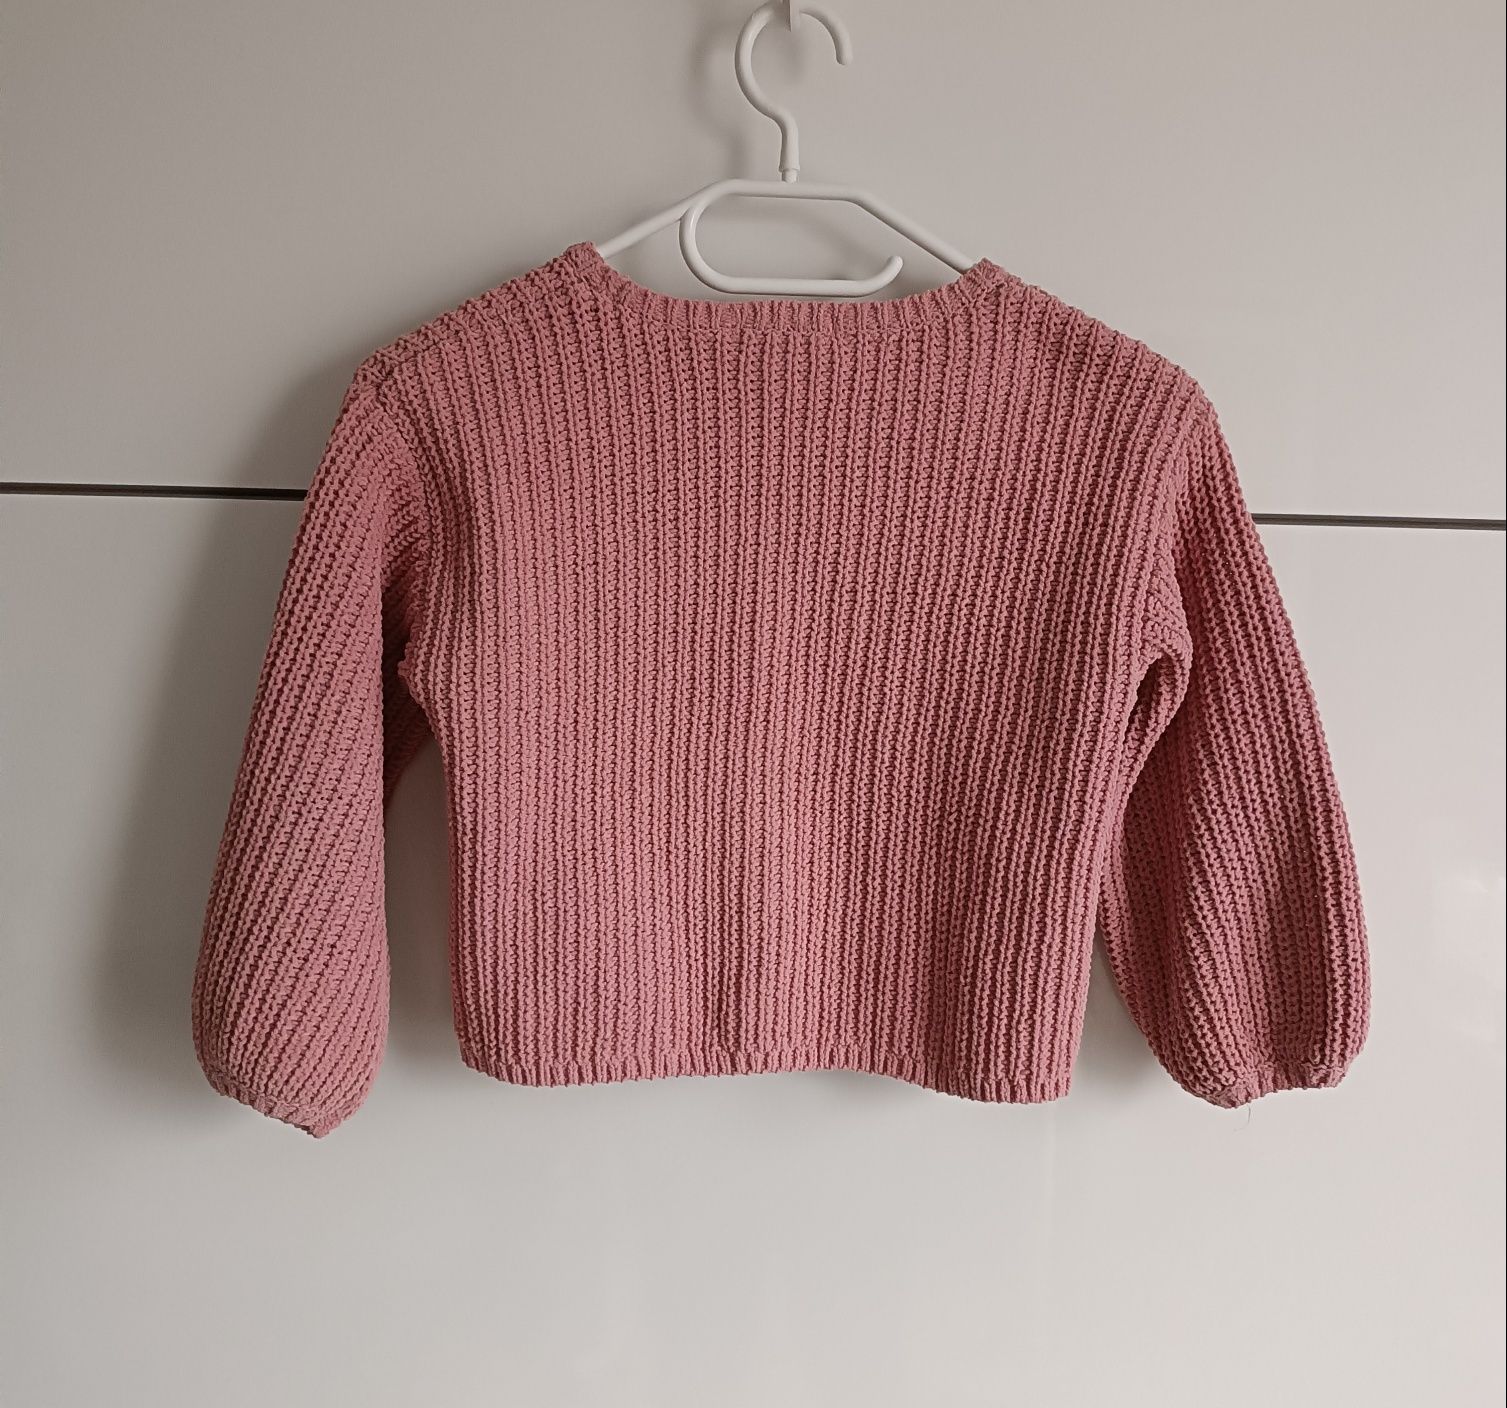 Sweterek/ Sweter H&M

# Rozmiar: 110/116
# Stan: bardzo dobry/ idealny